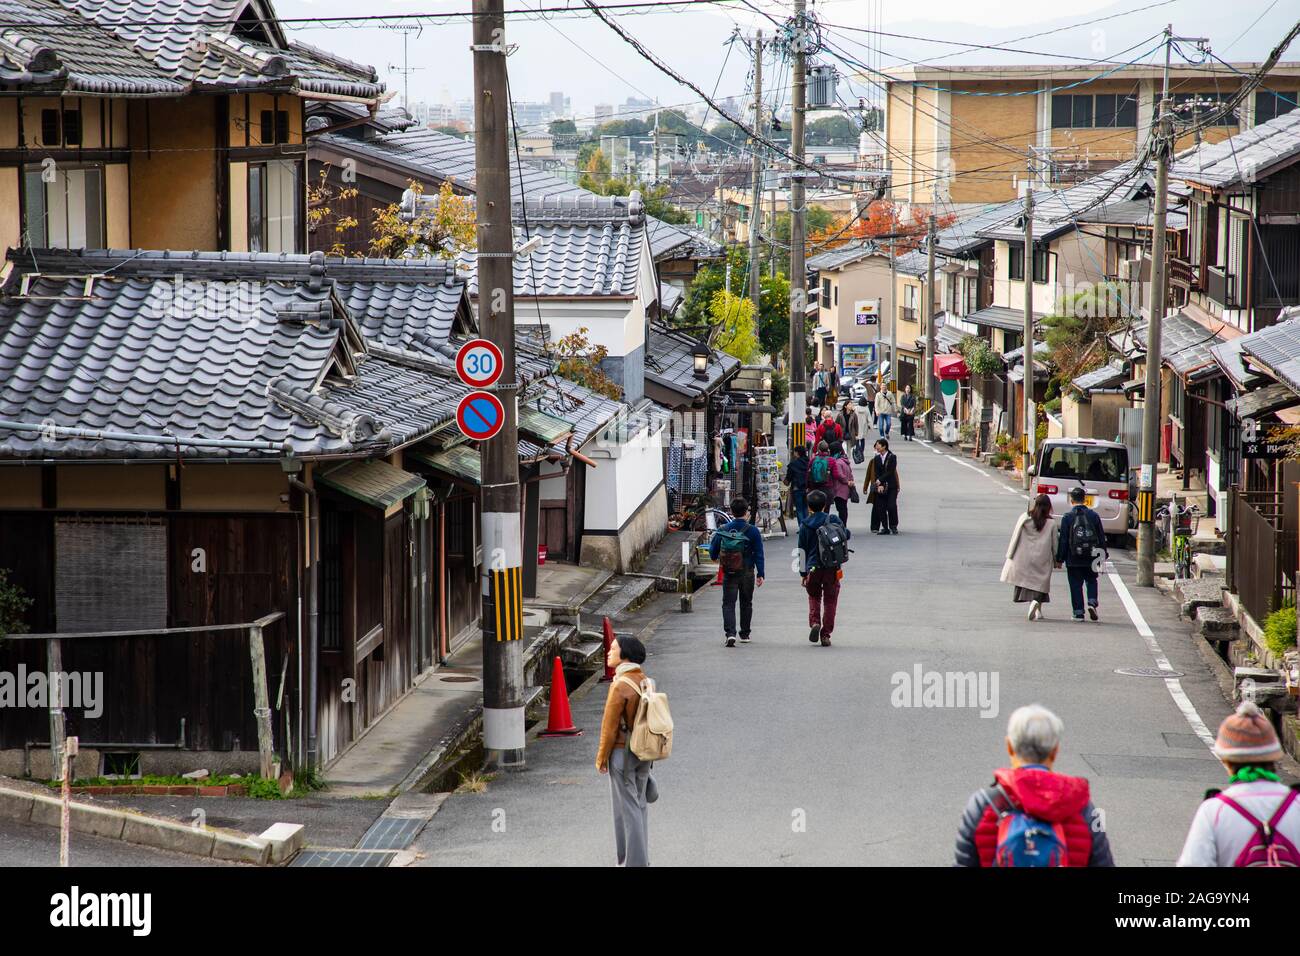 KYOTO, Japón -18 de noviembre de 2019: calles de la zona norte de Higashiyama que es uno de Kioto de los distritos turísticos más importantes Foto de stock